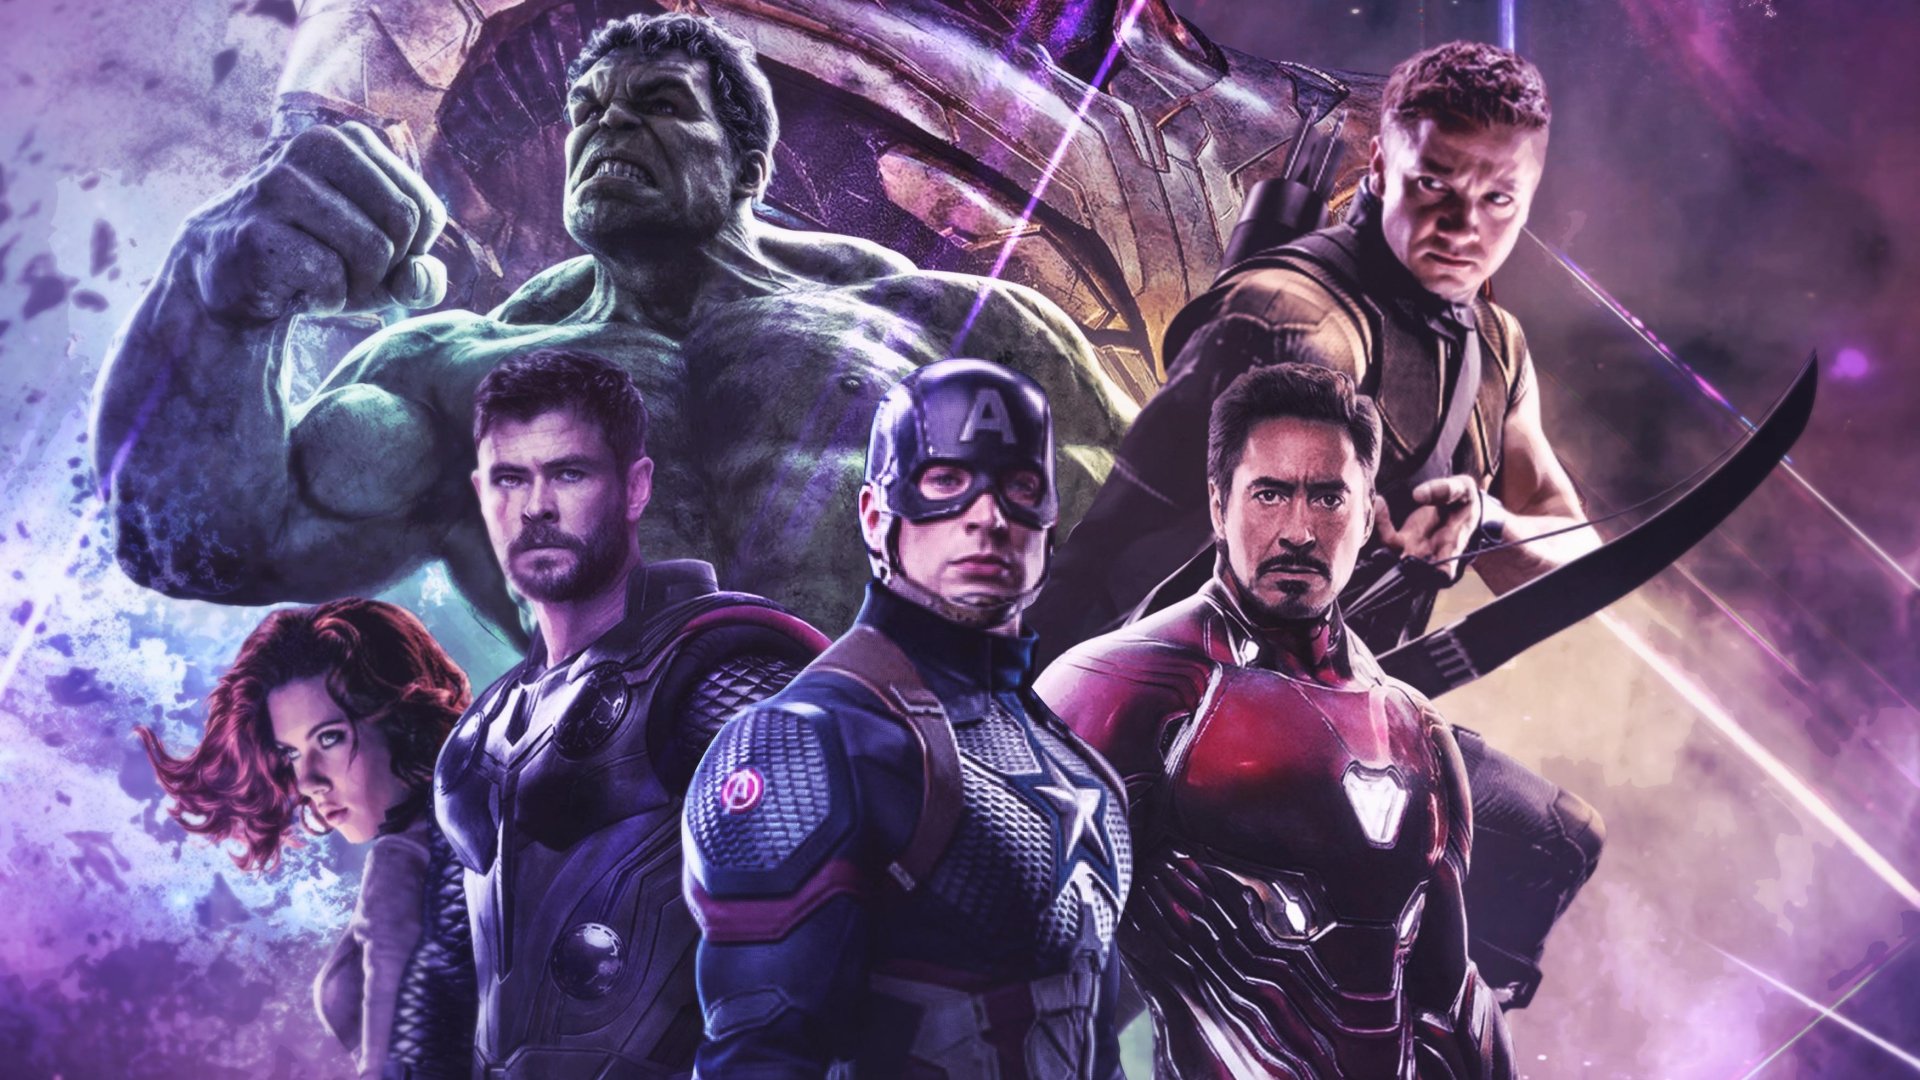 Movie Avengers Endgame The Avengers Black Widow Captain America Chris Evans...